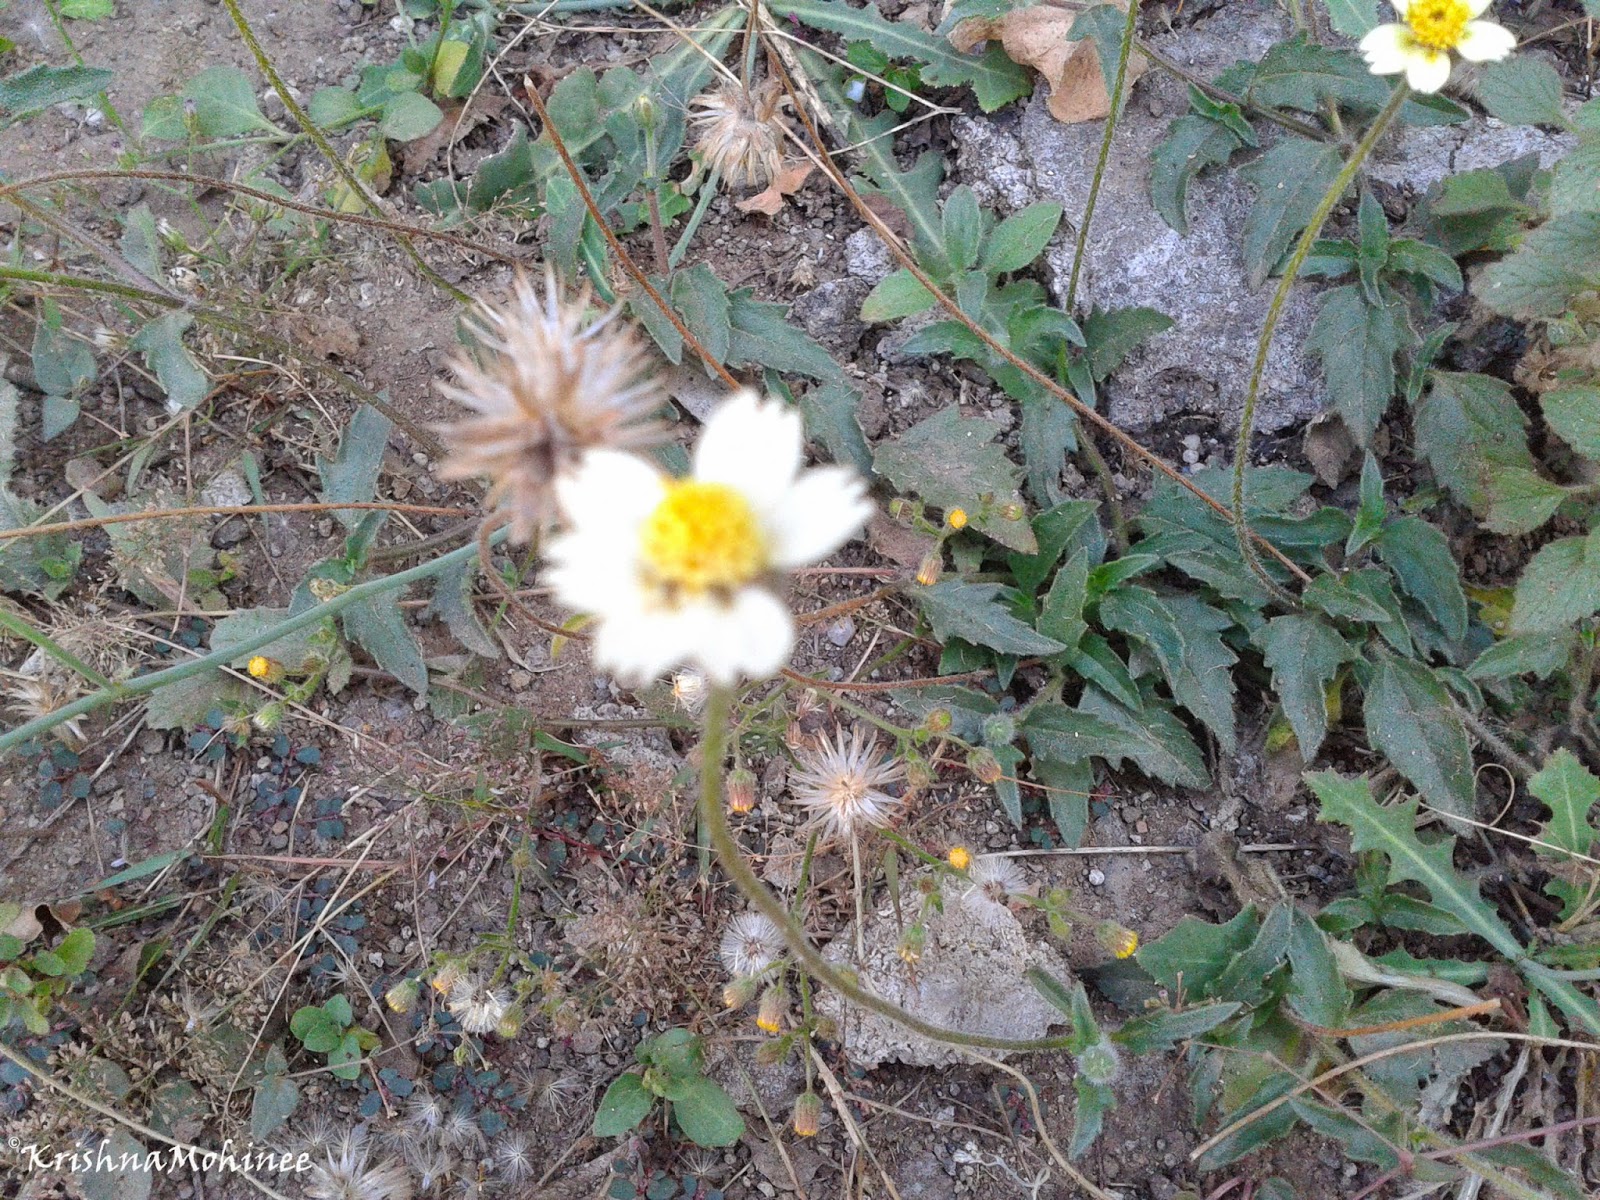 Image: White wild flower